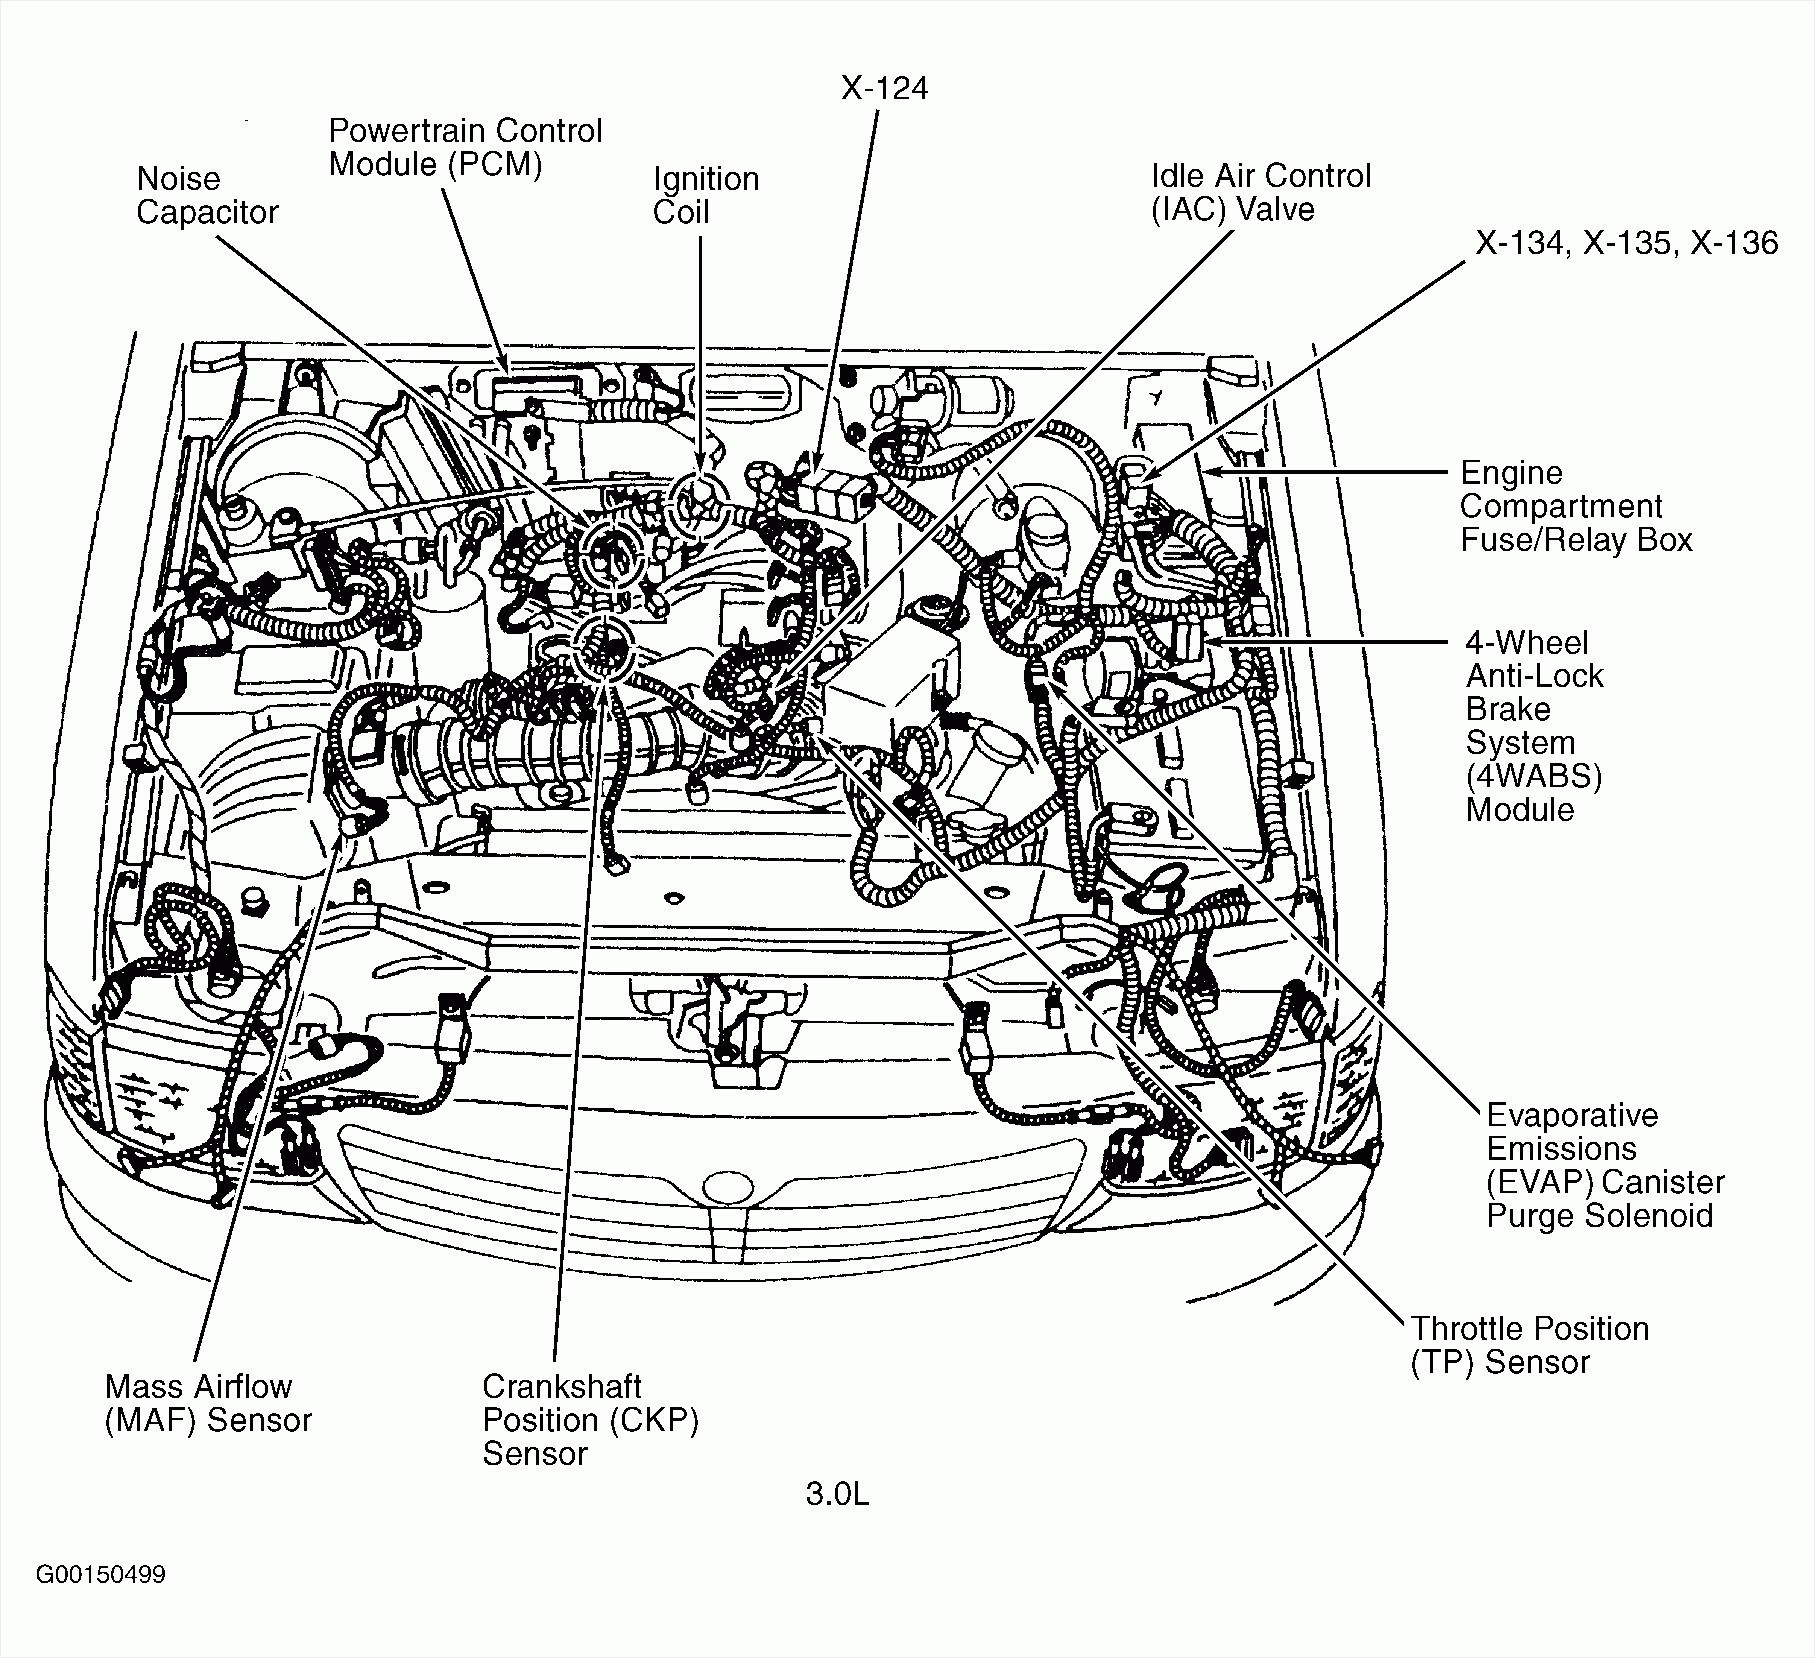 1999 Pontiac Grand Prix Engine Diagram 1997 Grand Am Engine Diagram Wiring Diagram Inside Of 1999 Pontiac Grand Prix Engine Diagram